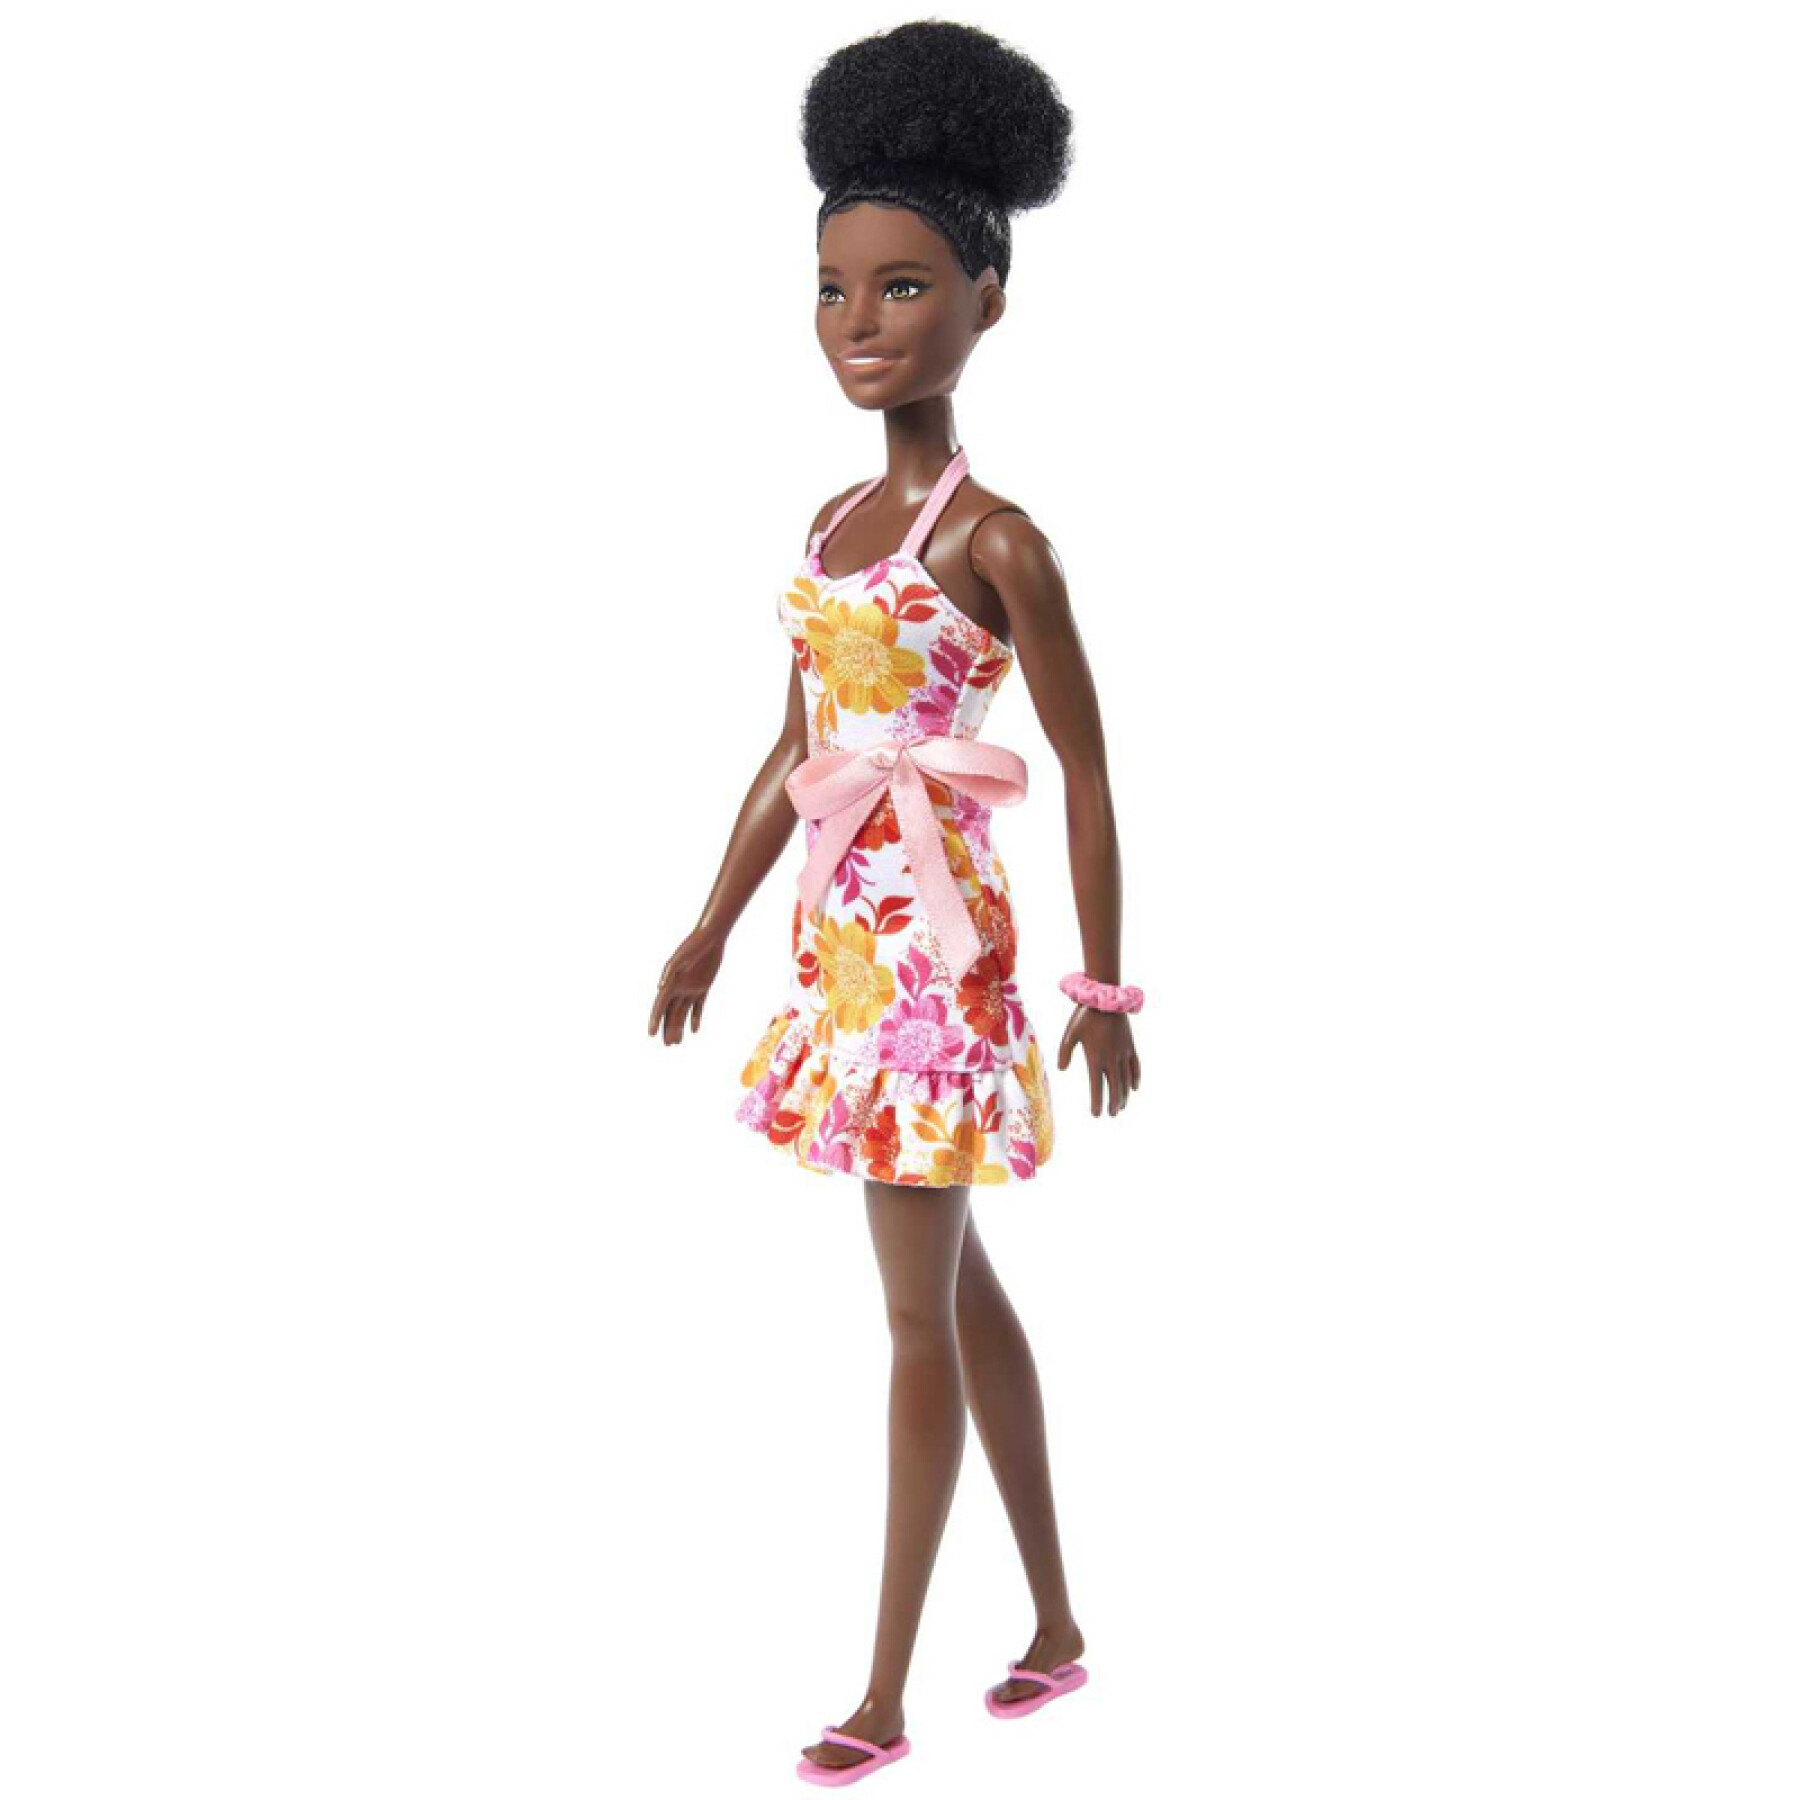 Barbiepuppe liebt braunen Locean Mattel France